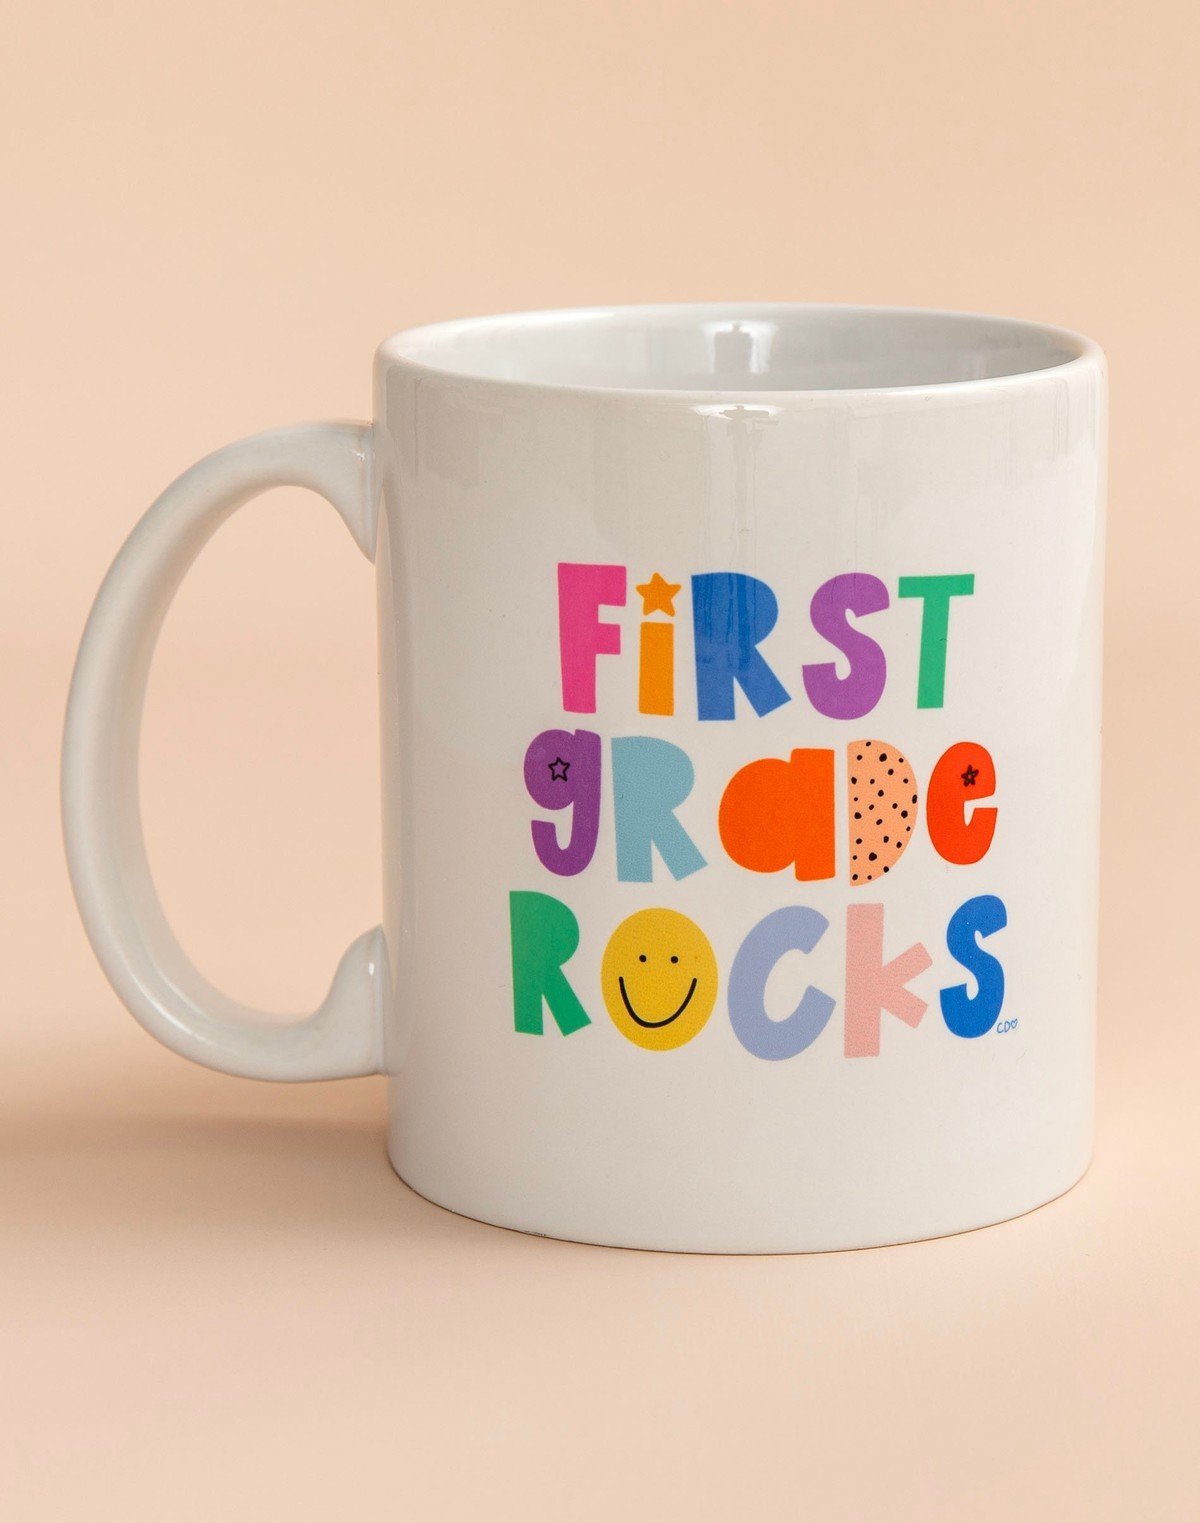 First Grade Rocks Mug item